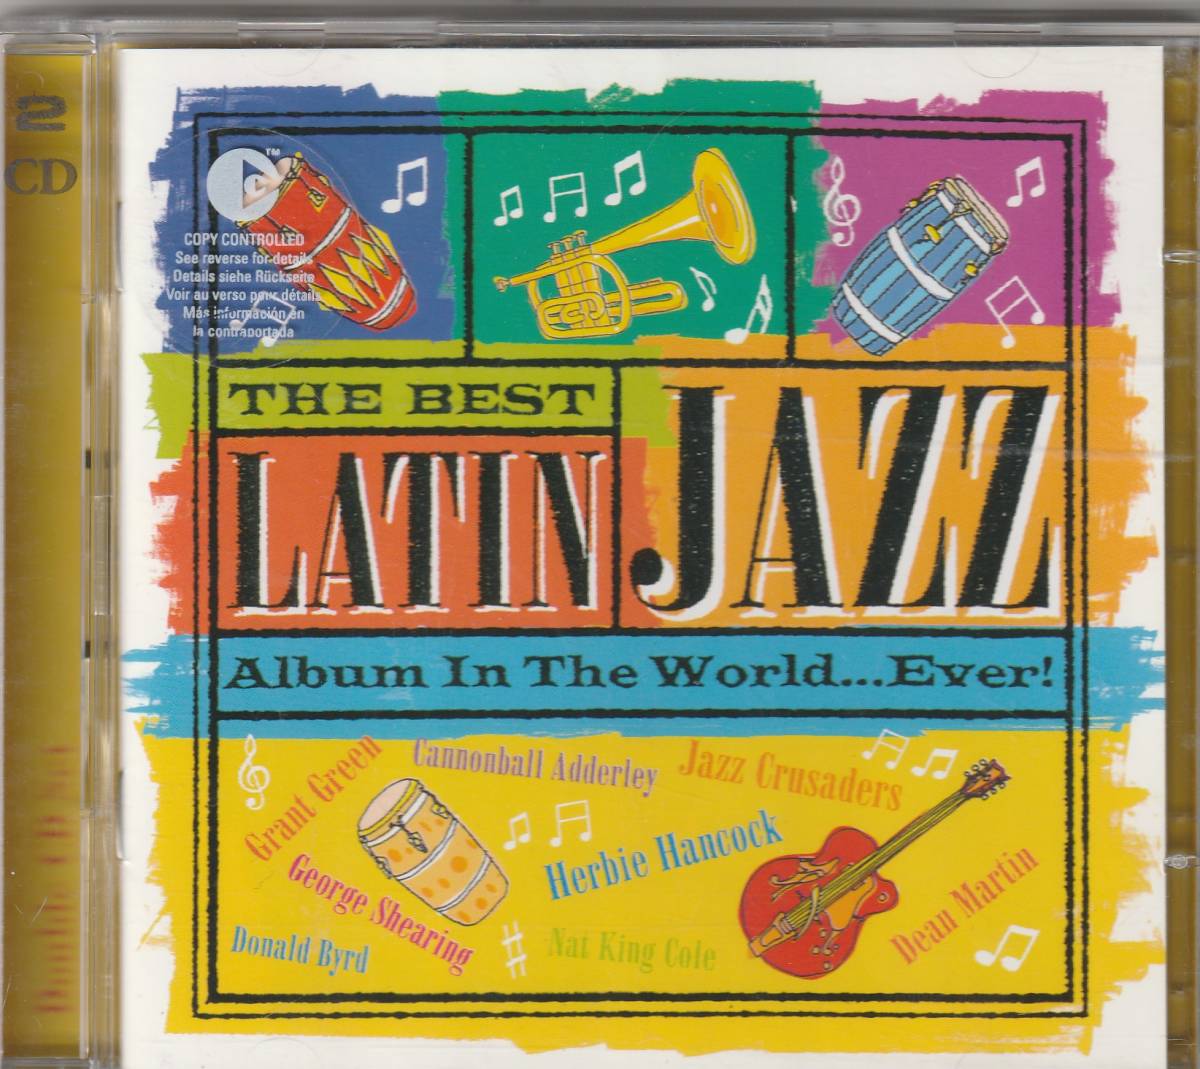  ザ・ベスト・オブ・ラテン・ジャズ The Best Latin Jazz の画像1